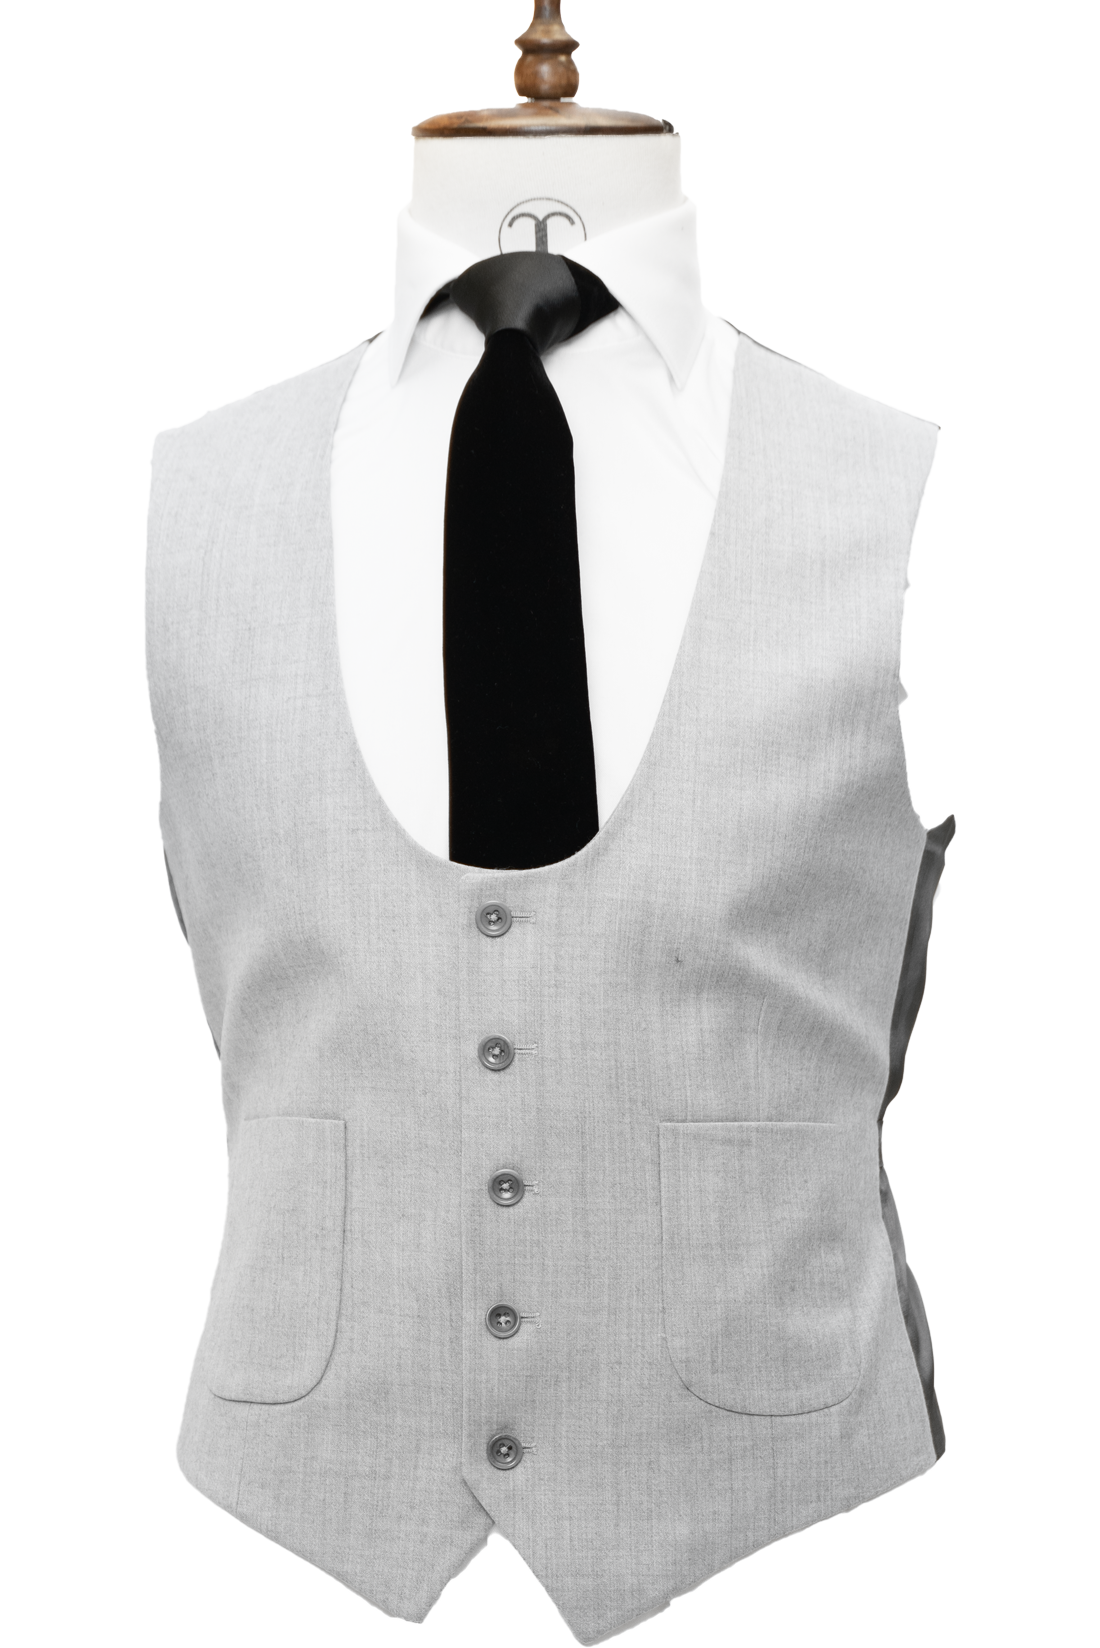 Zignone - Ash Grey Cashmere 3-Piece Fit Slim Fit Suit with Patch Pockets